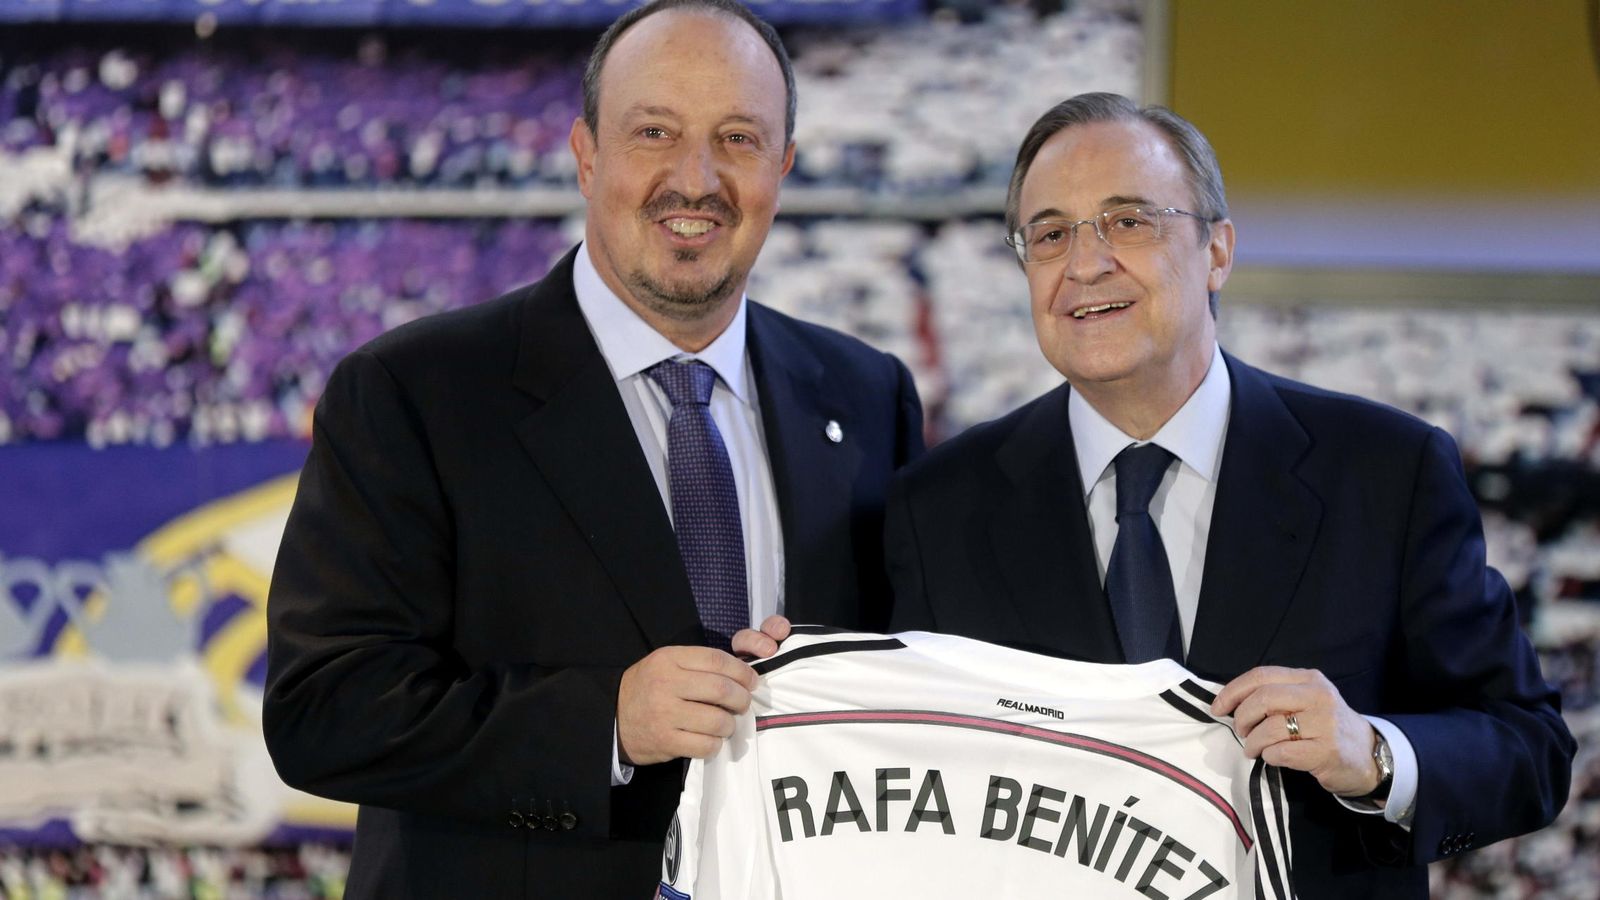 Foto: Rafa Benítez y Florentino Pérez, durante la presentación del primero como entrenador del Real Madrid (EFE)